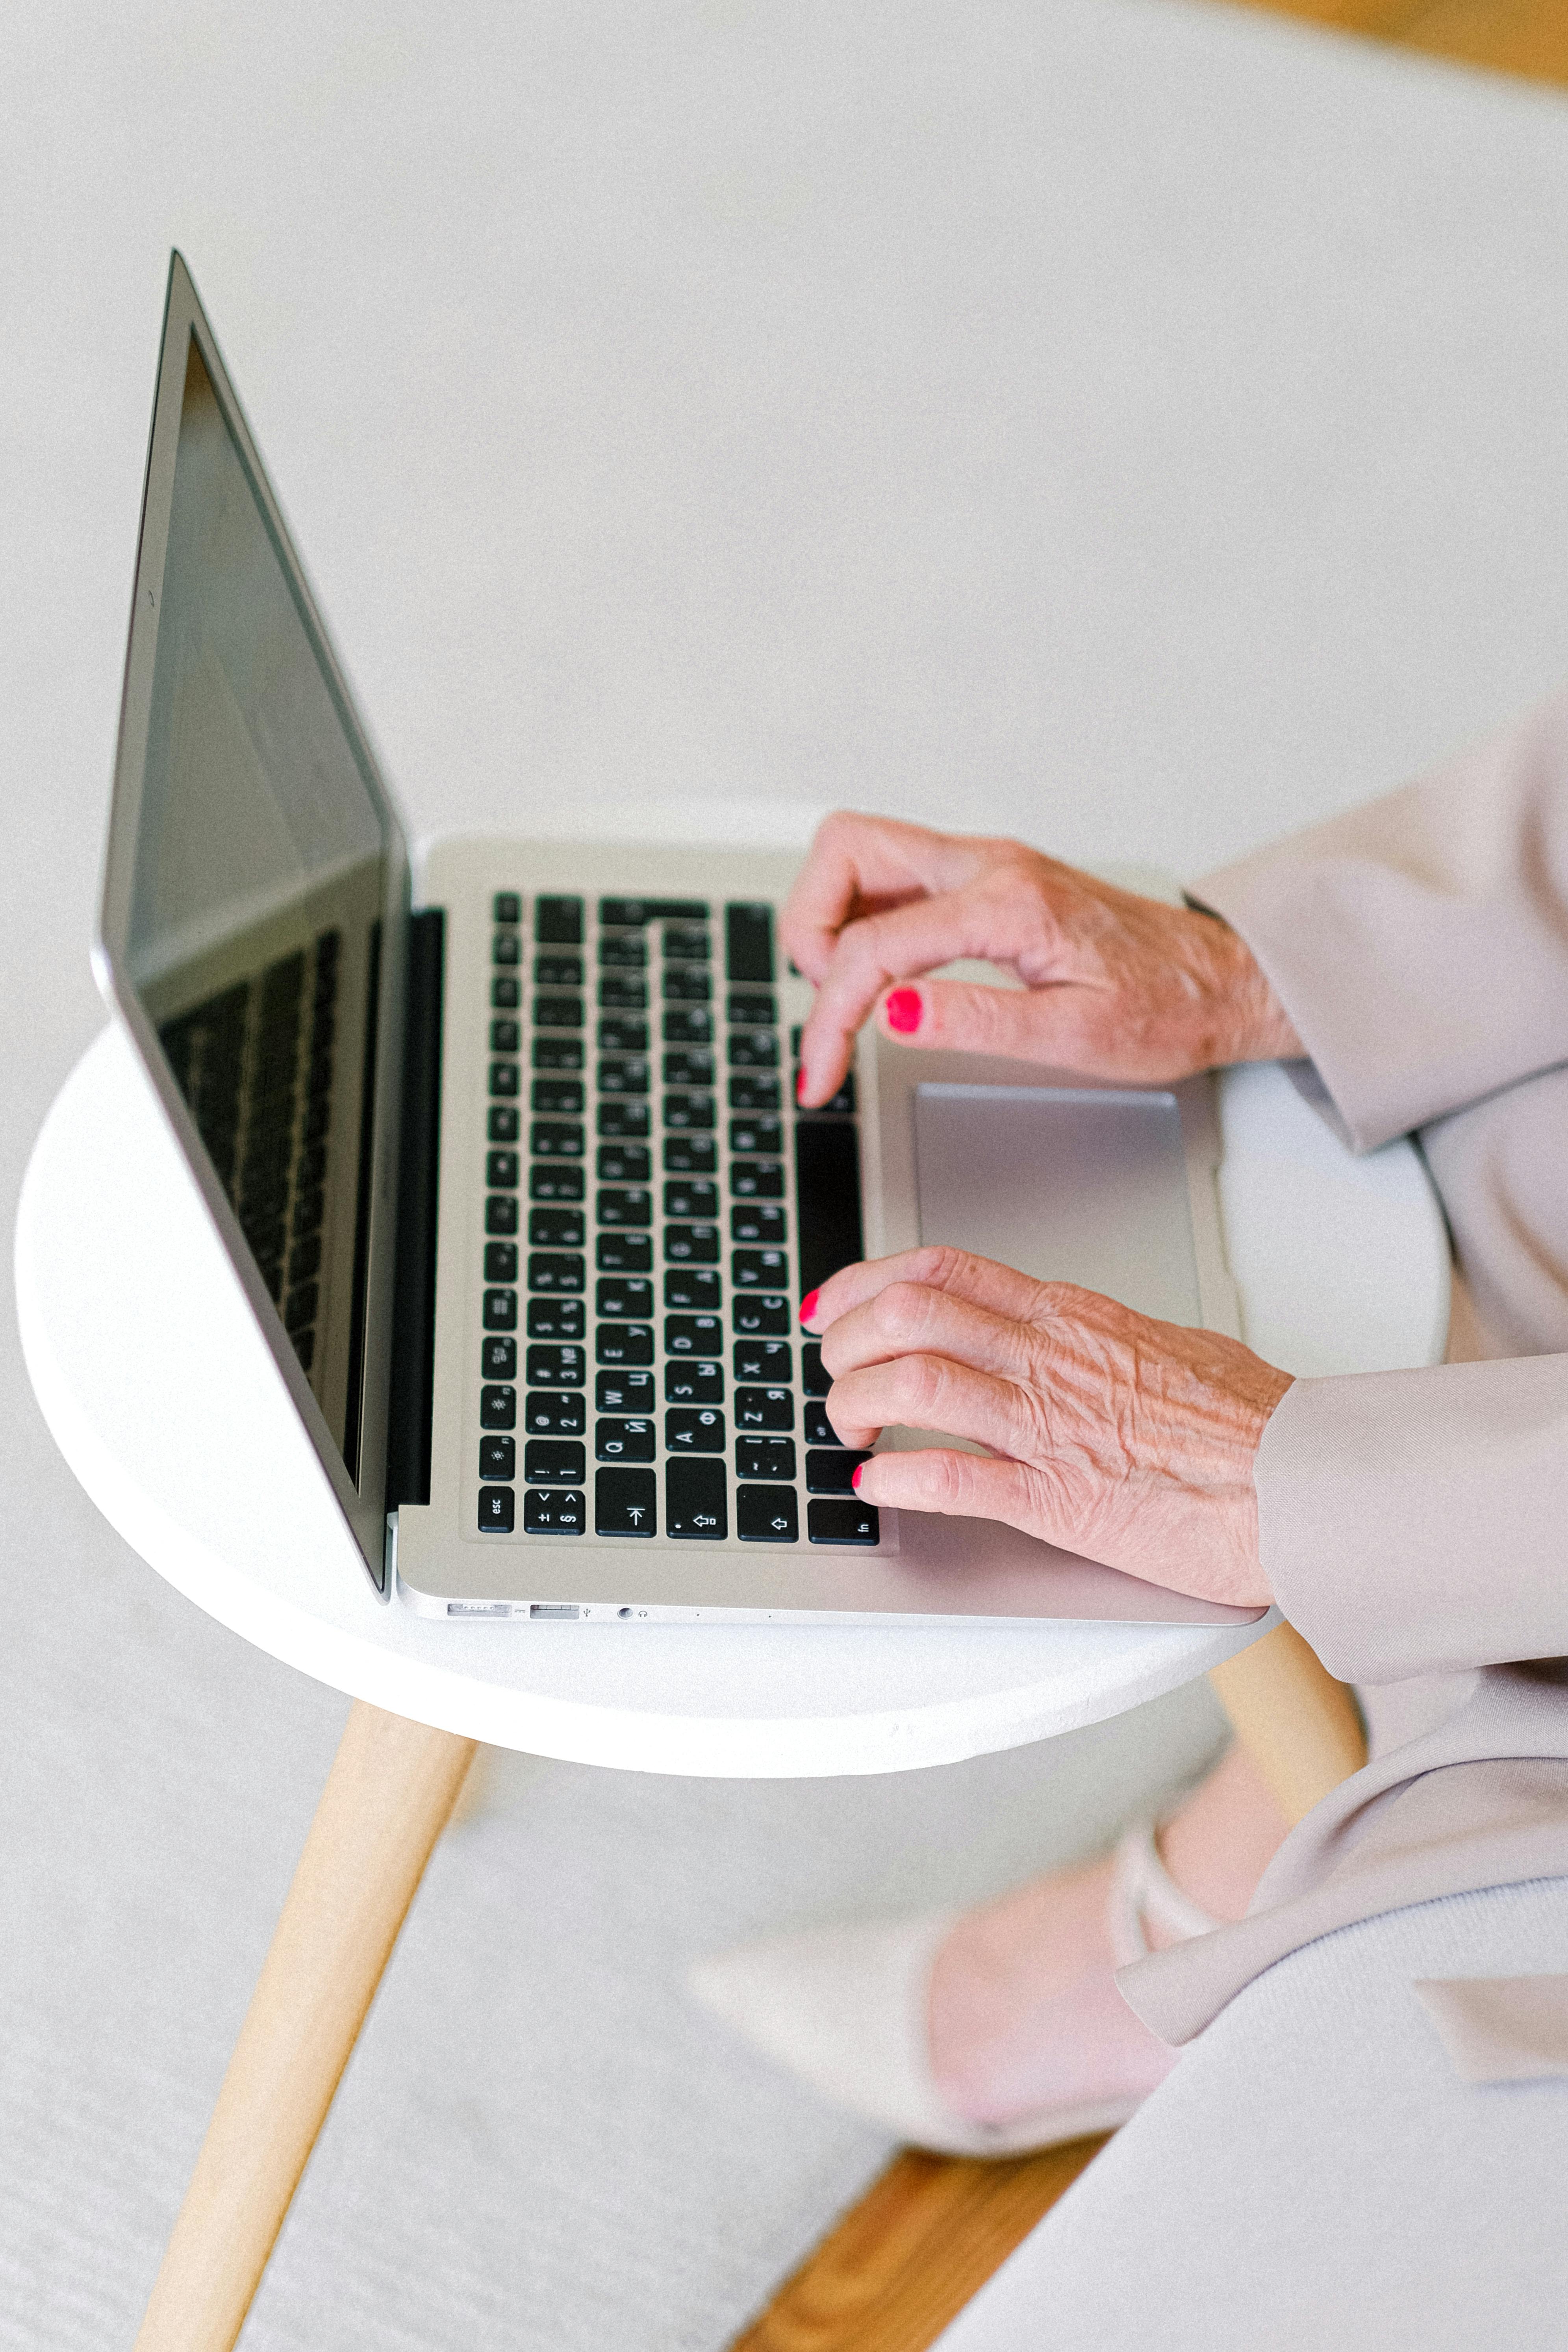 Grand-mère, absorbée par son ordinateur portable | Source : Pexels